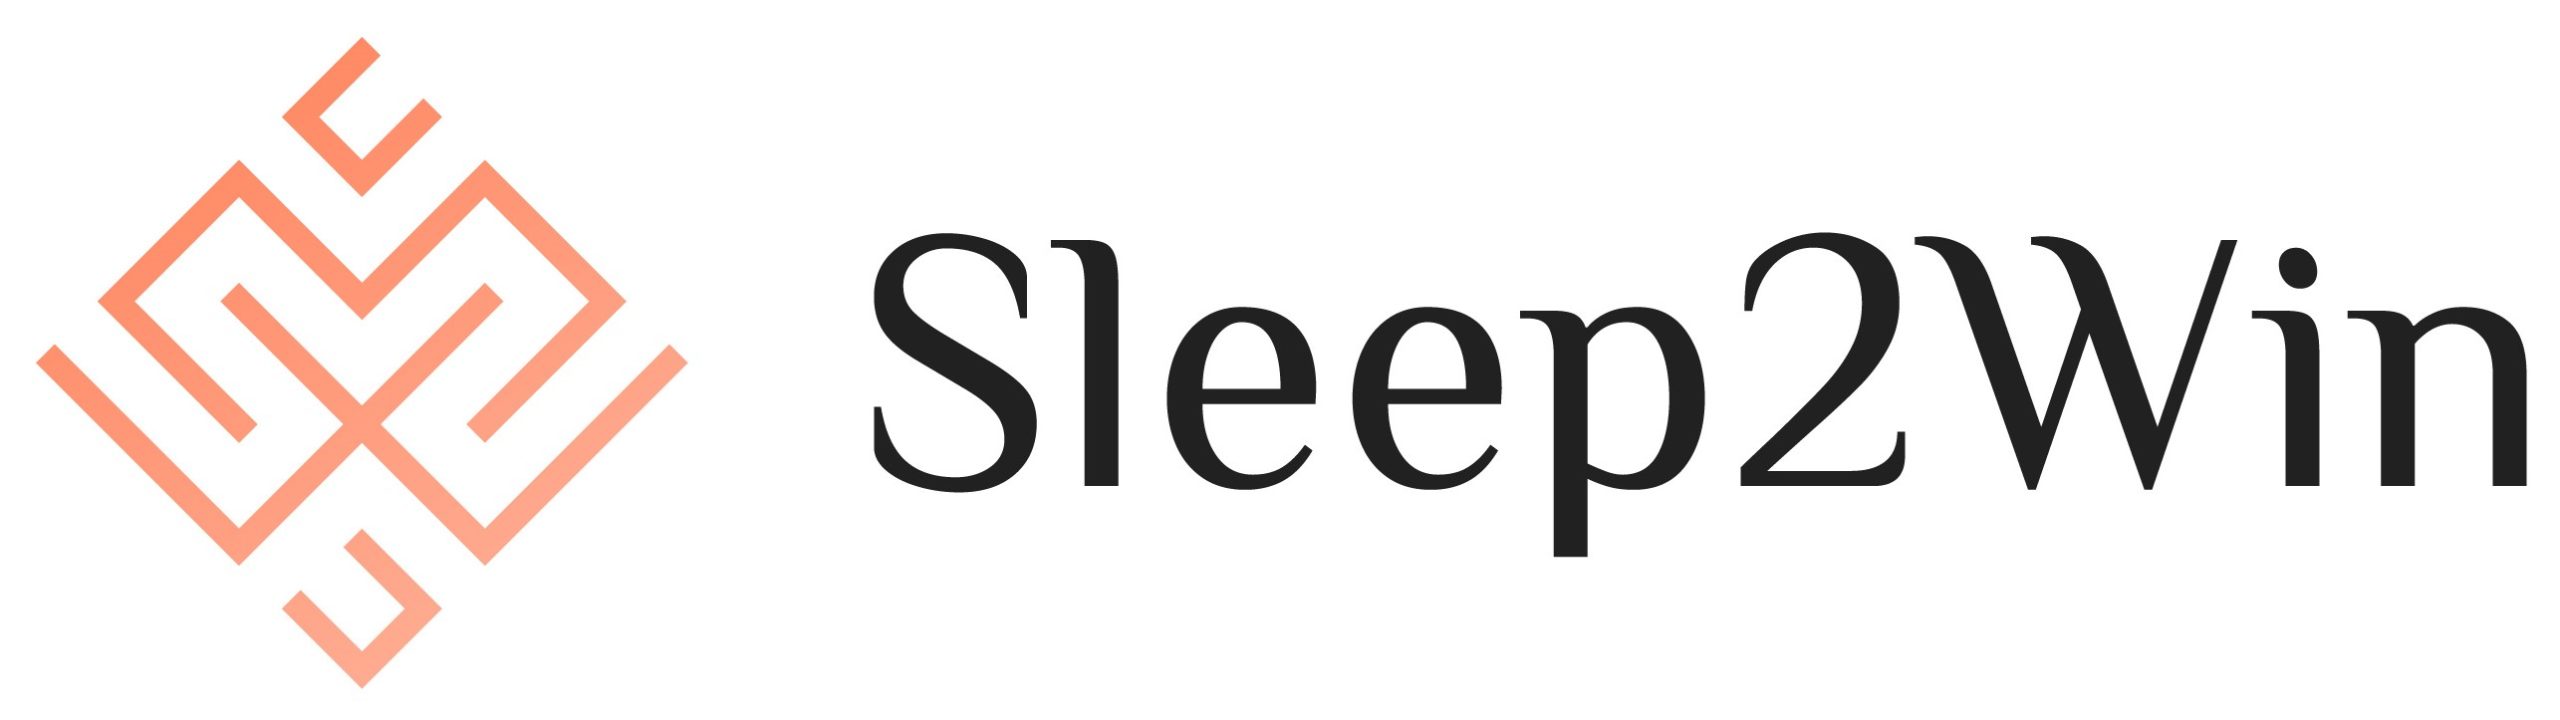 Sleep2win